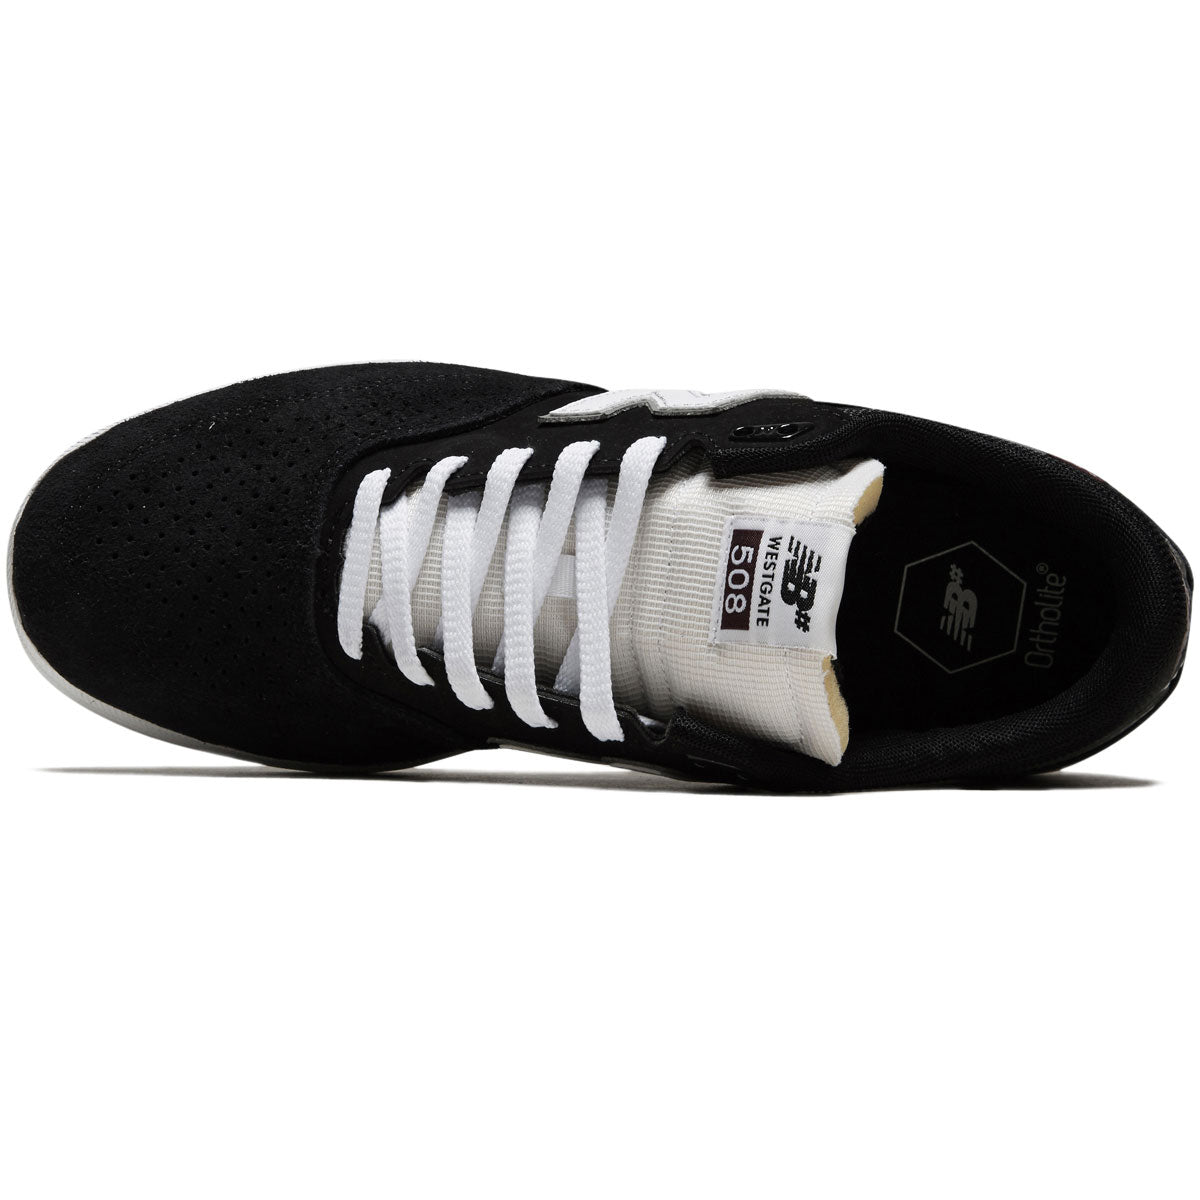 New Balance 508 Westgate Shoes - Black image 3